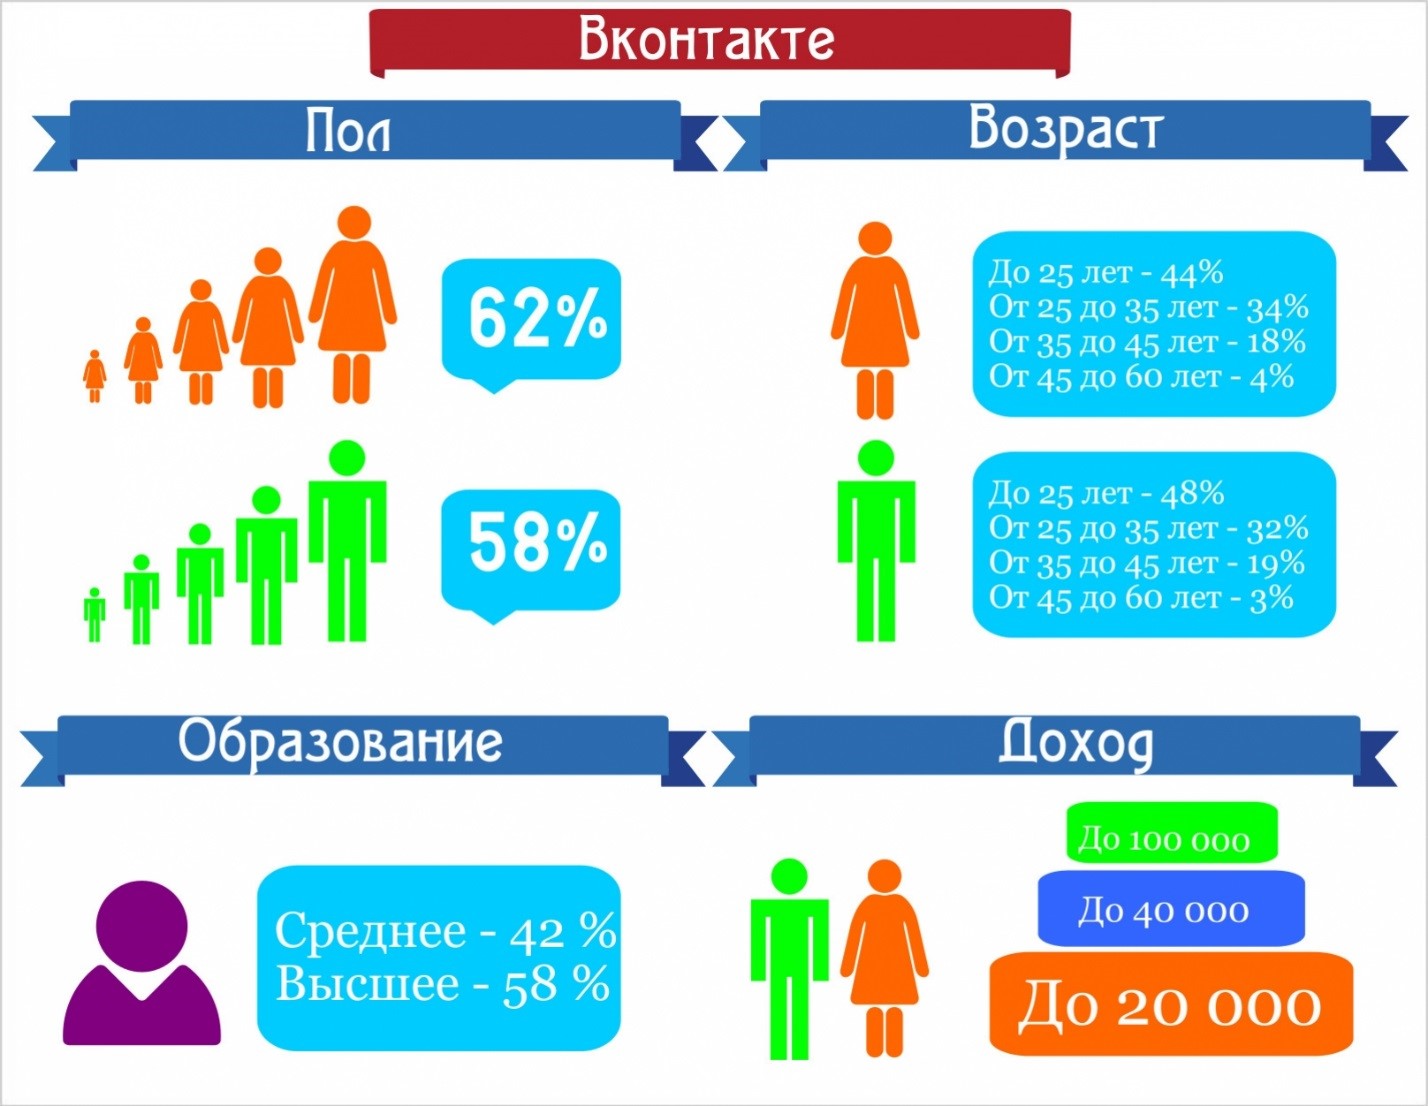 Соотношение пользователей социальной сети ВКонтакте